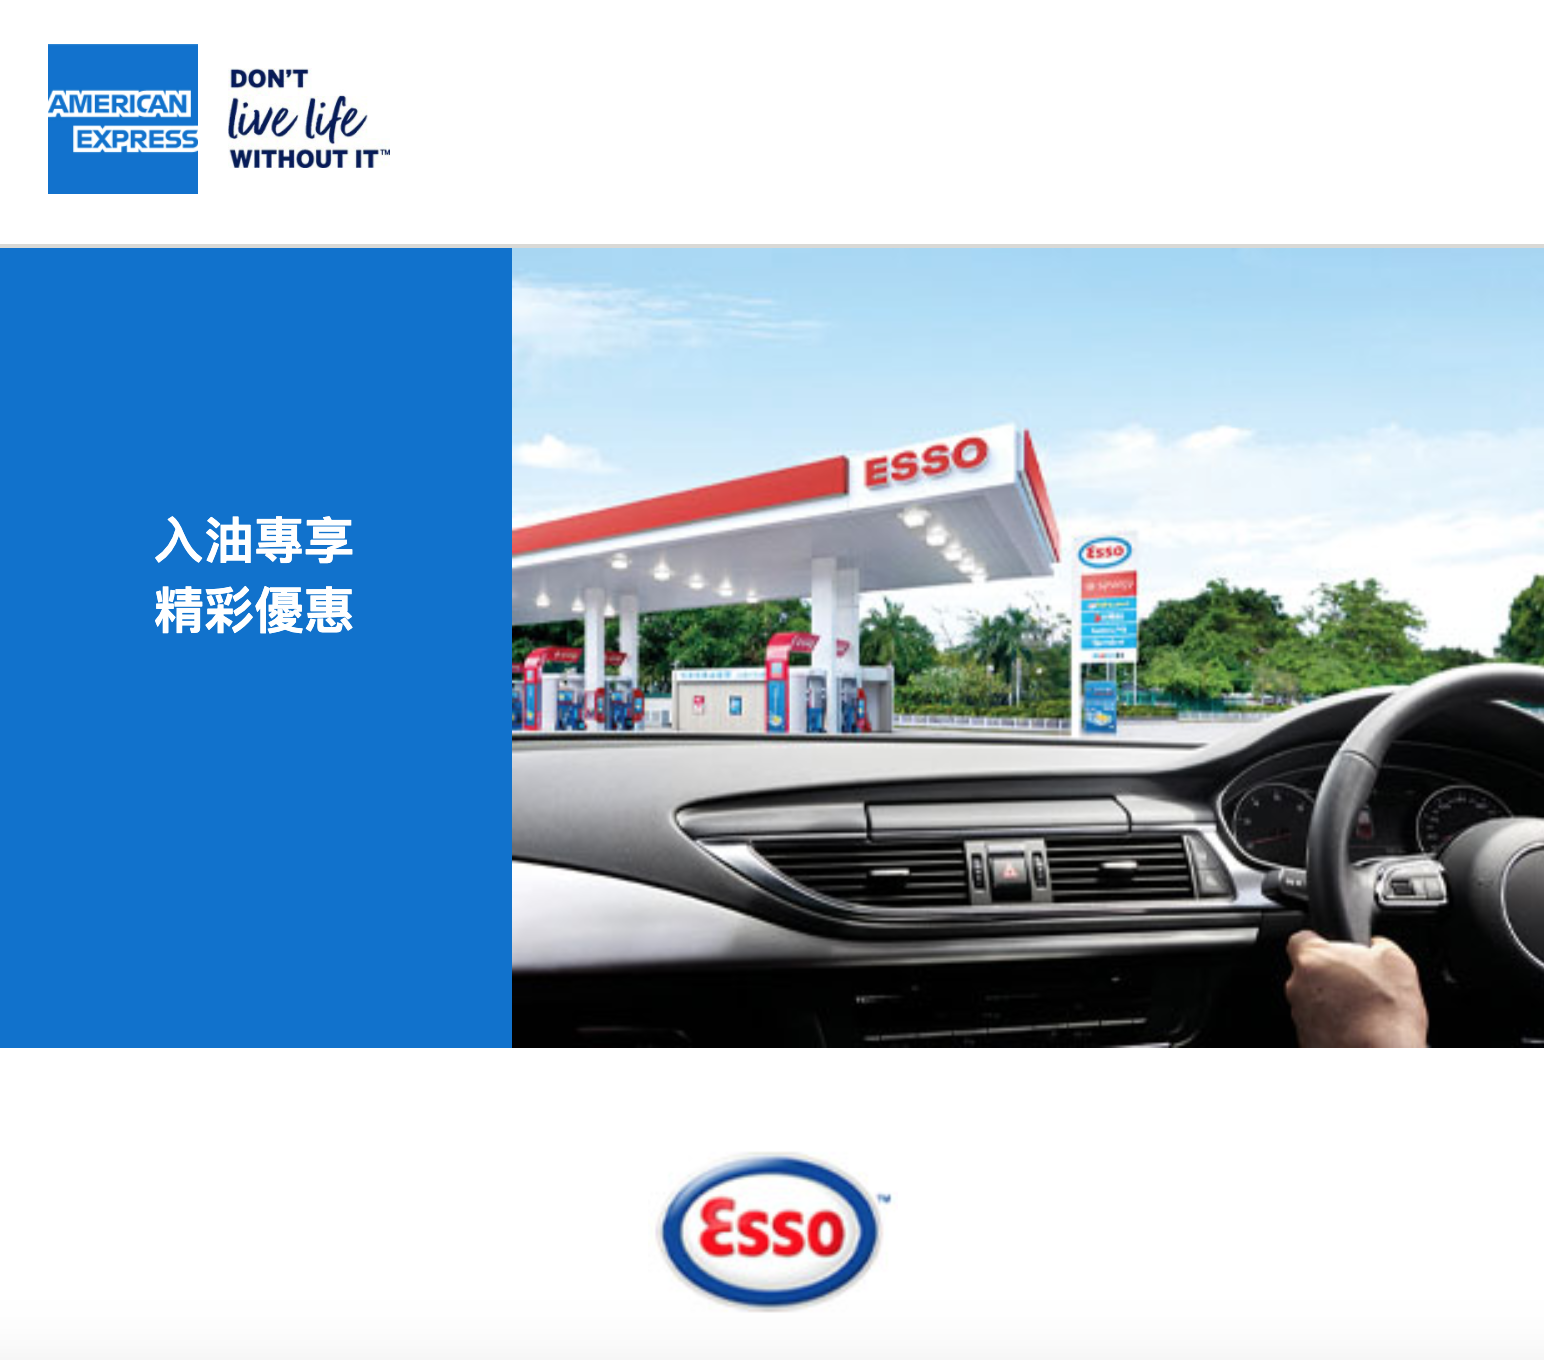 美國運通卡Esso入油優惠！每公升HK$2.80即時汽油折扣 + 滿HK$500更可賺取100額外里數！